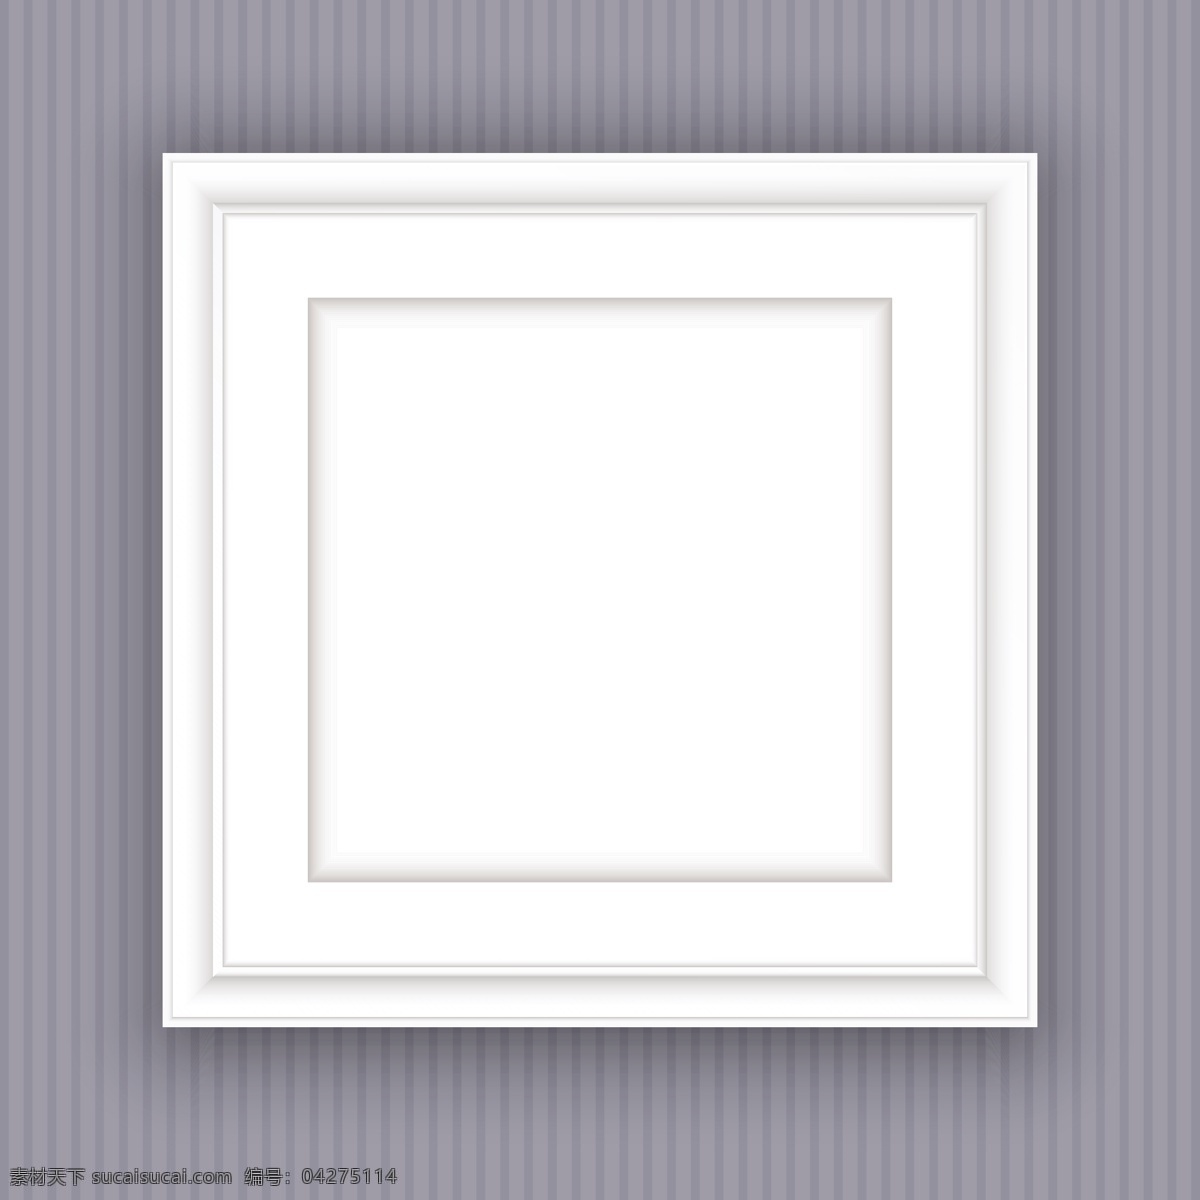 白色 正方形 现代 简约 画框 相框 白色现代 墙壁 木地板 镜框 黑色边框 挂画 装饰画 展示效果 边框 底纹边框 边框相框